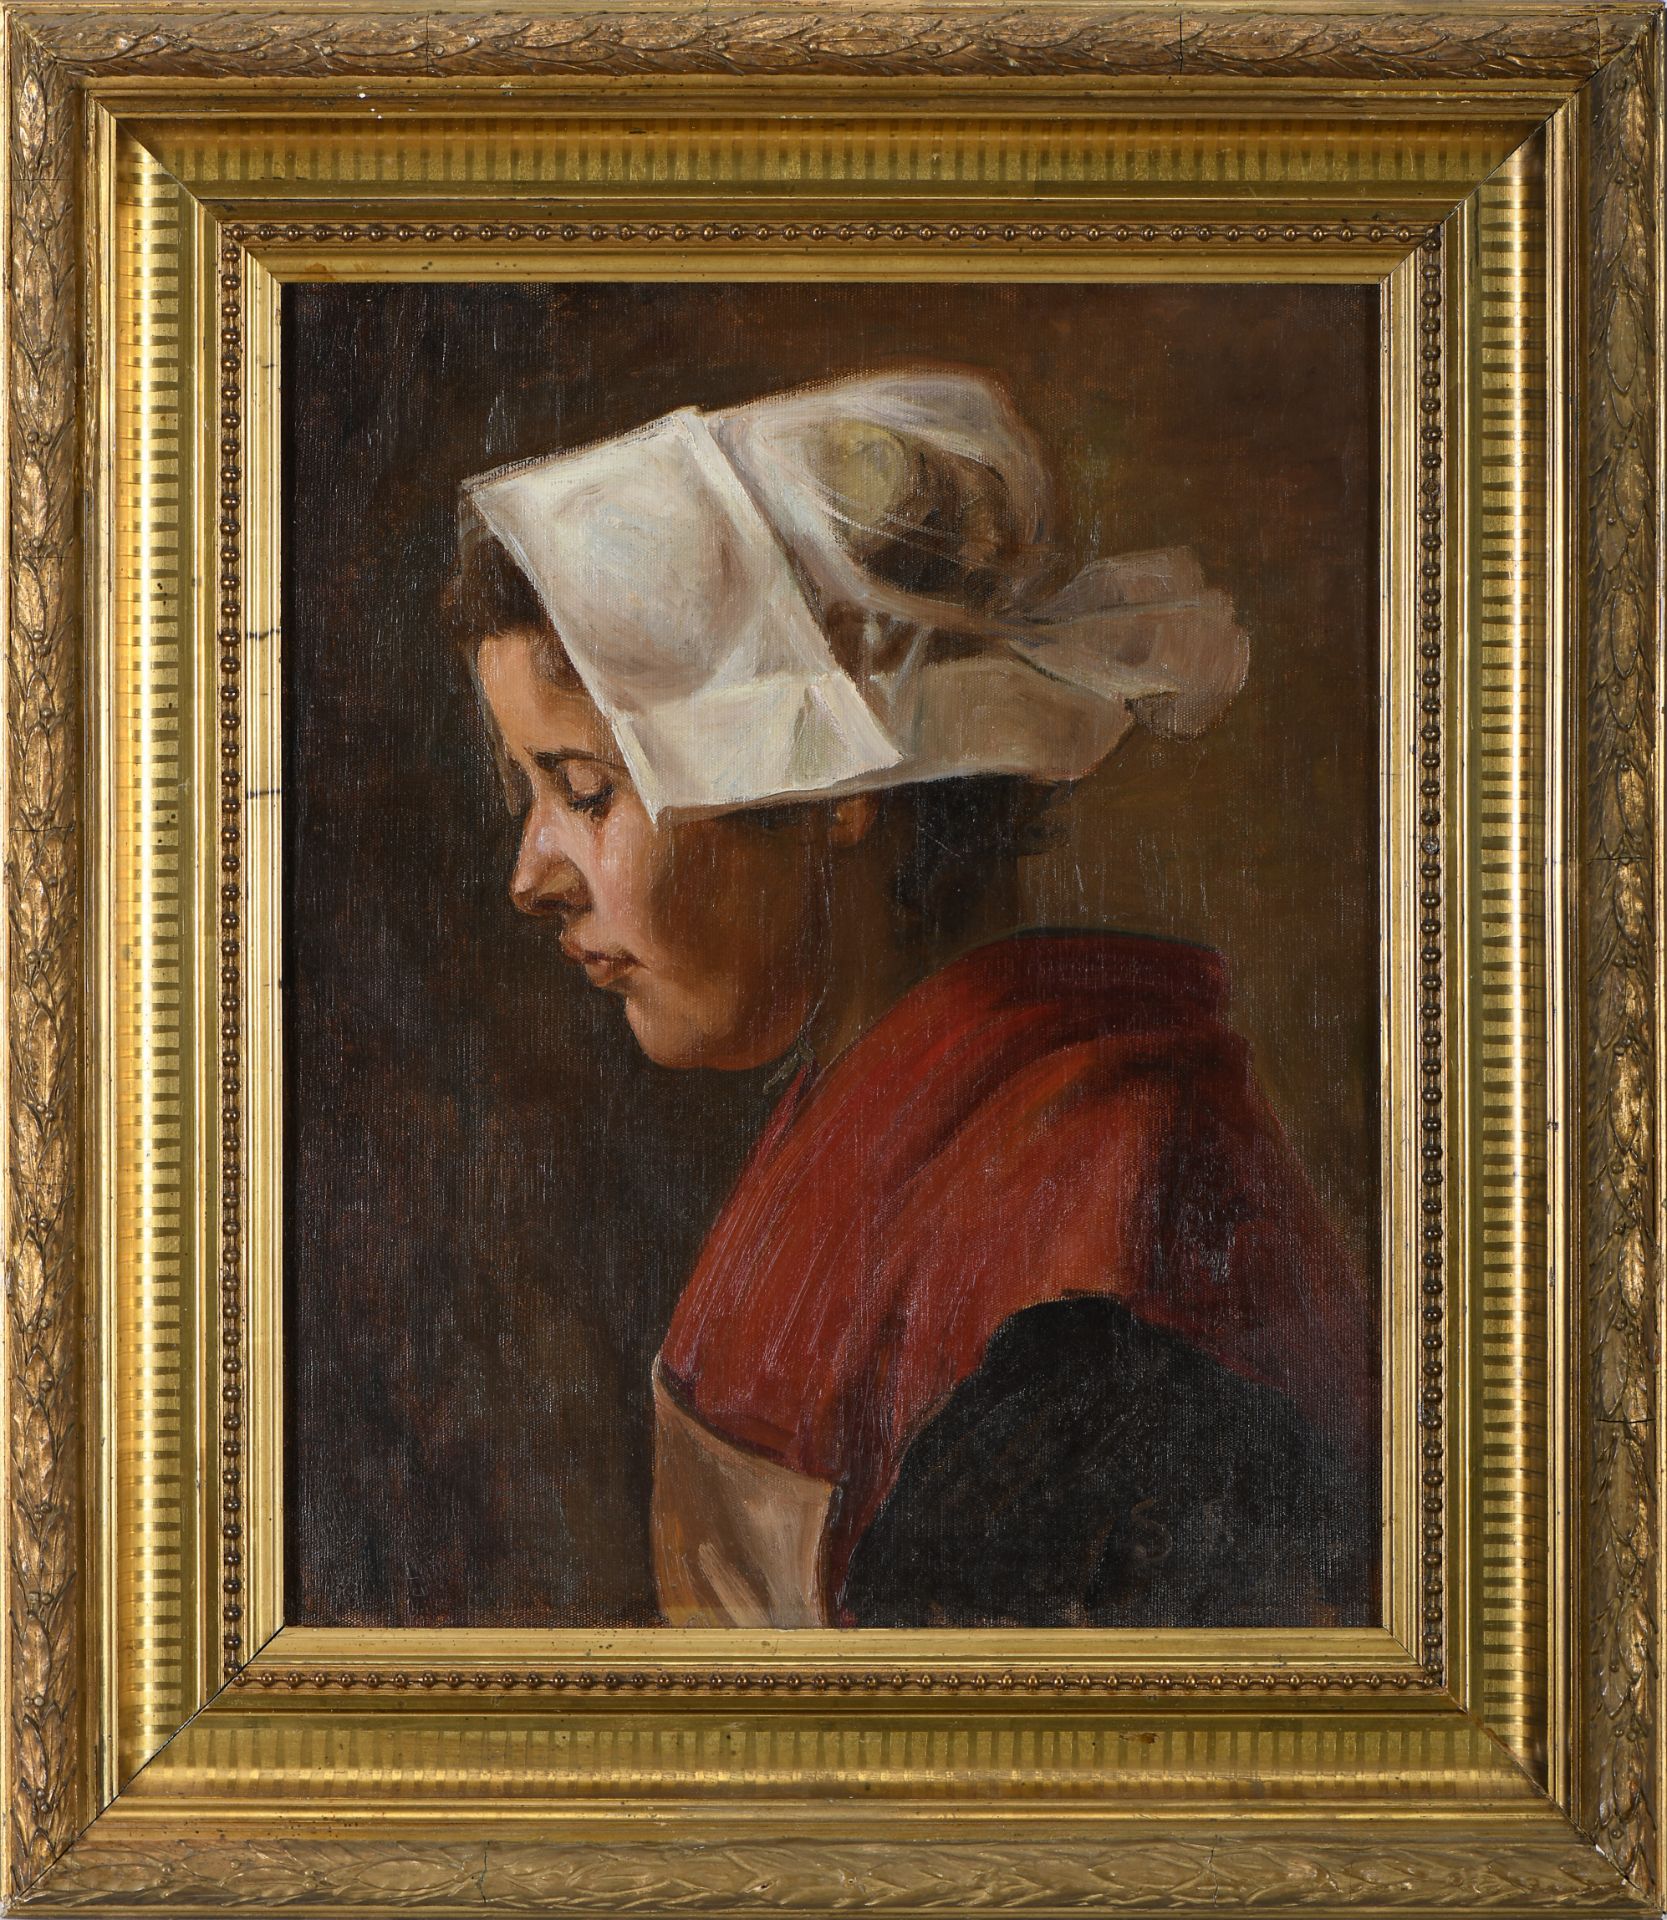 SOFIA MARTINS DE SOUSA - 1870-1960 Portrait of a girl wearing a bonnet